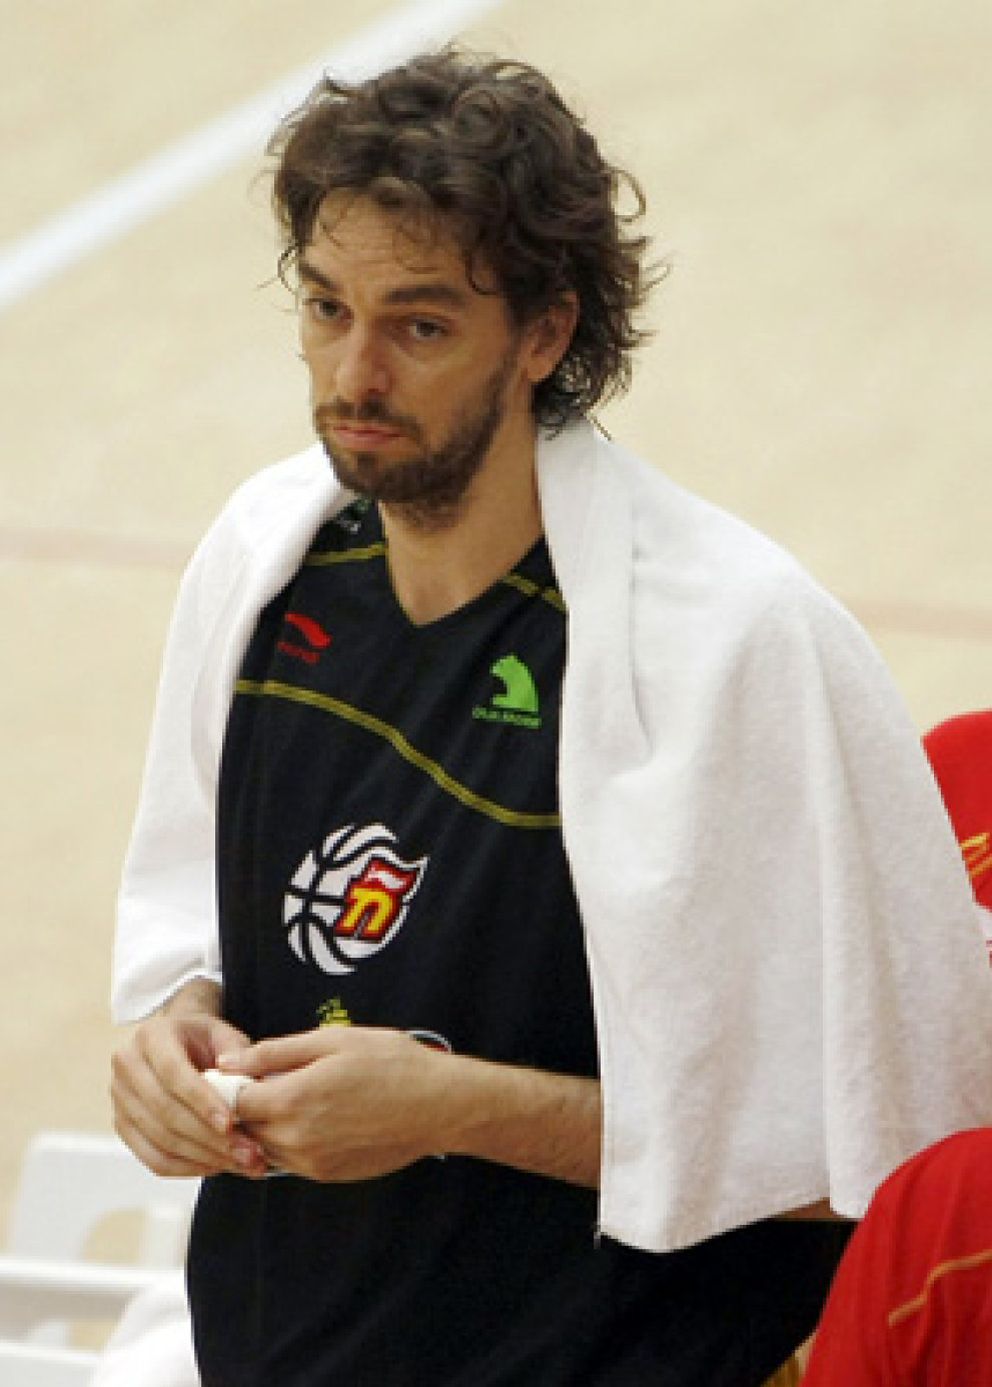 Foto: Gasol podrá jugar el Eurobasket aunque llegará justo